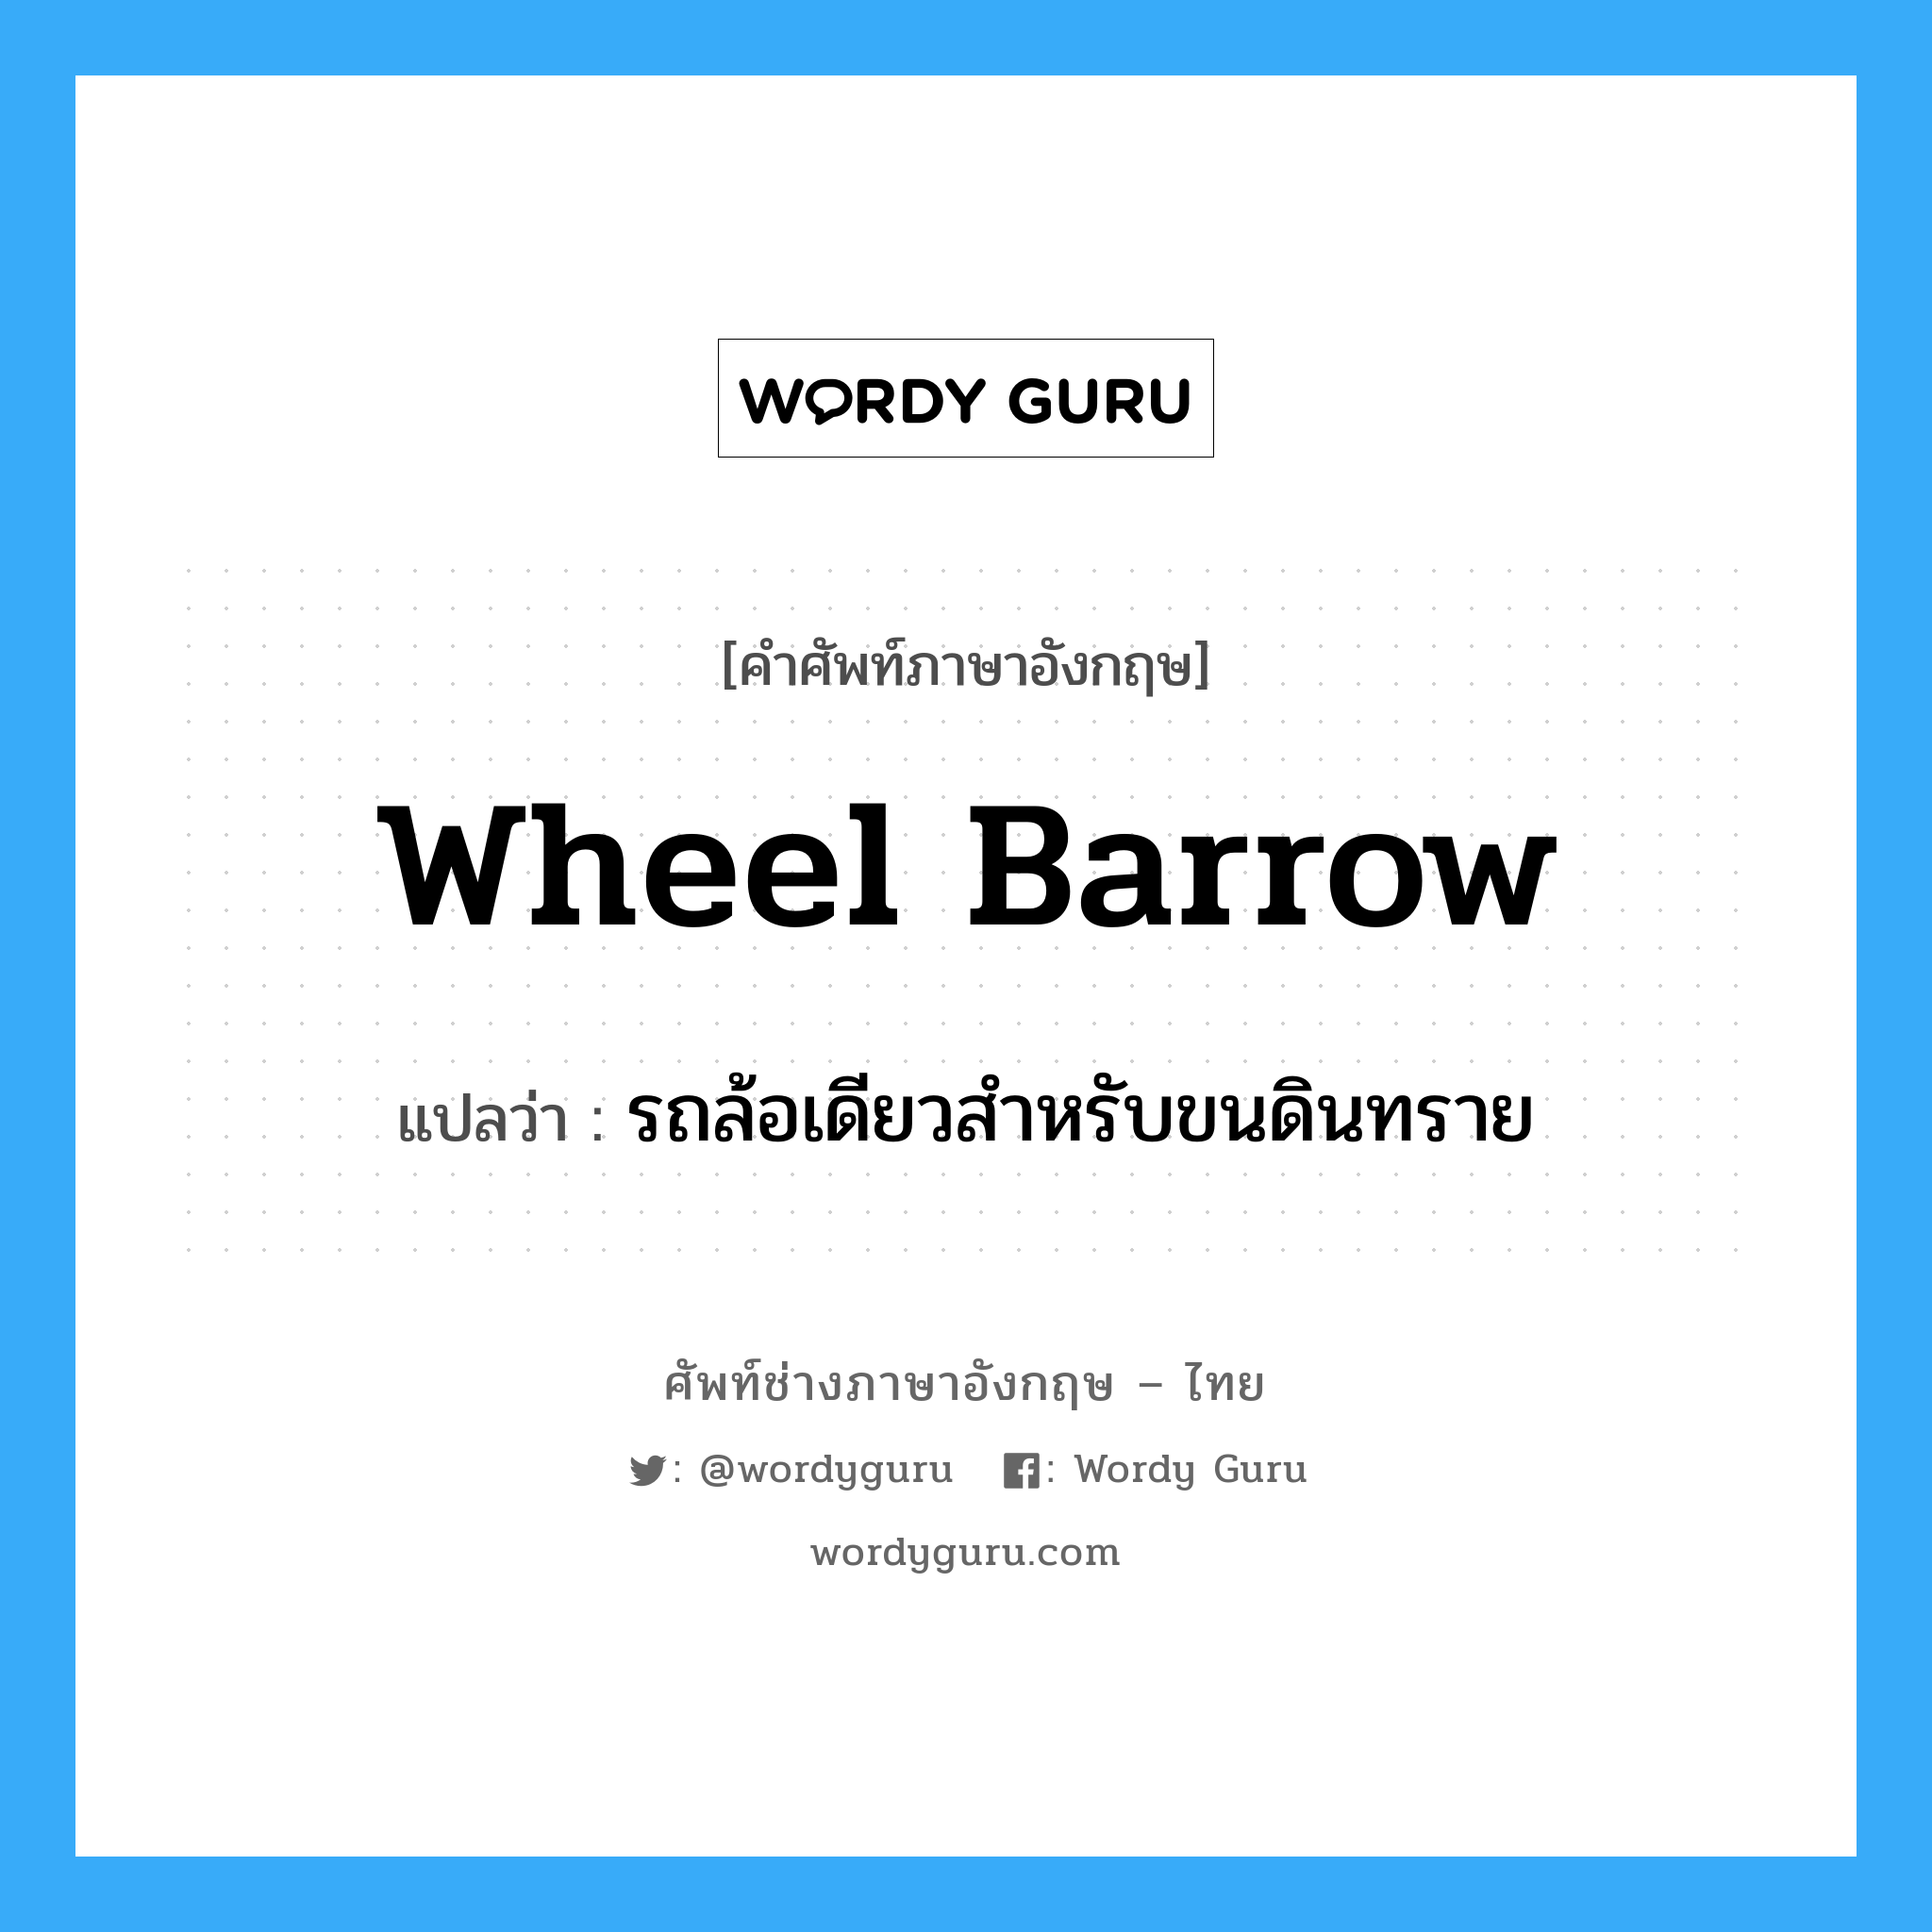 wheel barrow แปลว่า?, คำศัพท์ช่างภาษาอังกฤษ - ไทย wheel barrow คำศัพท์ภาษาอังกฤษ wheel barrow แปลว่า รถล้อเดียวสำหรับขนดินทราย